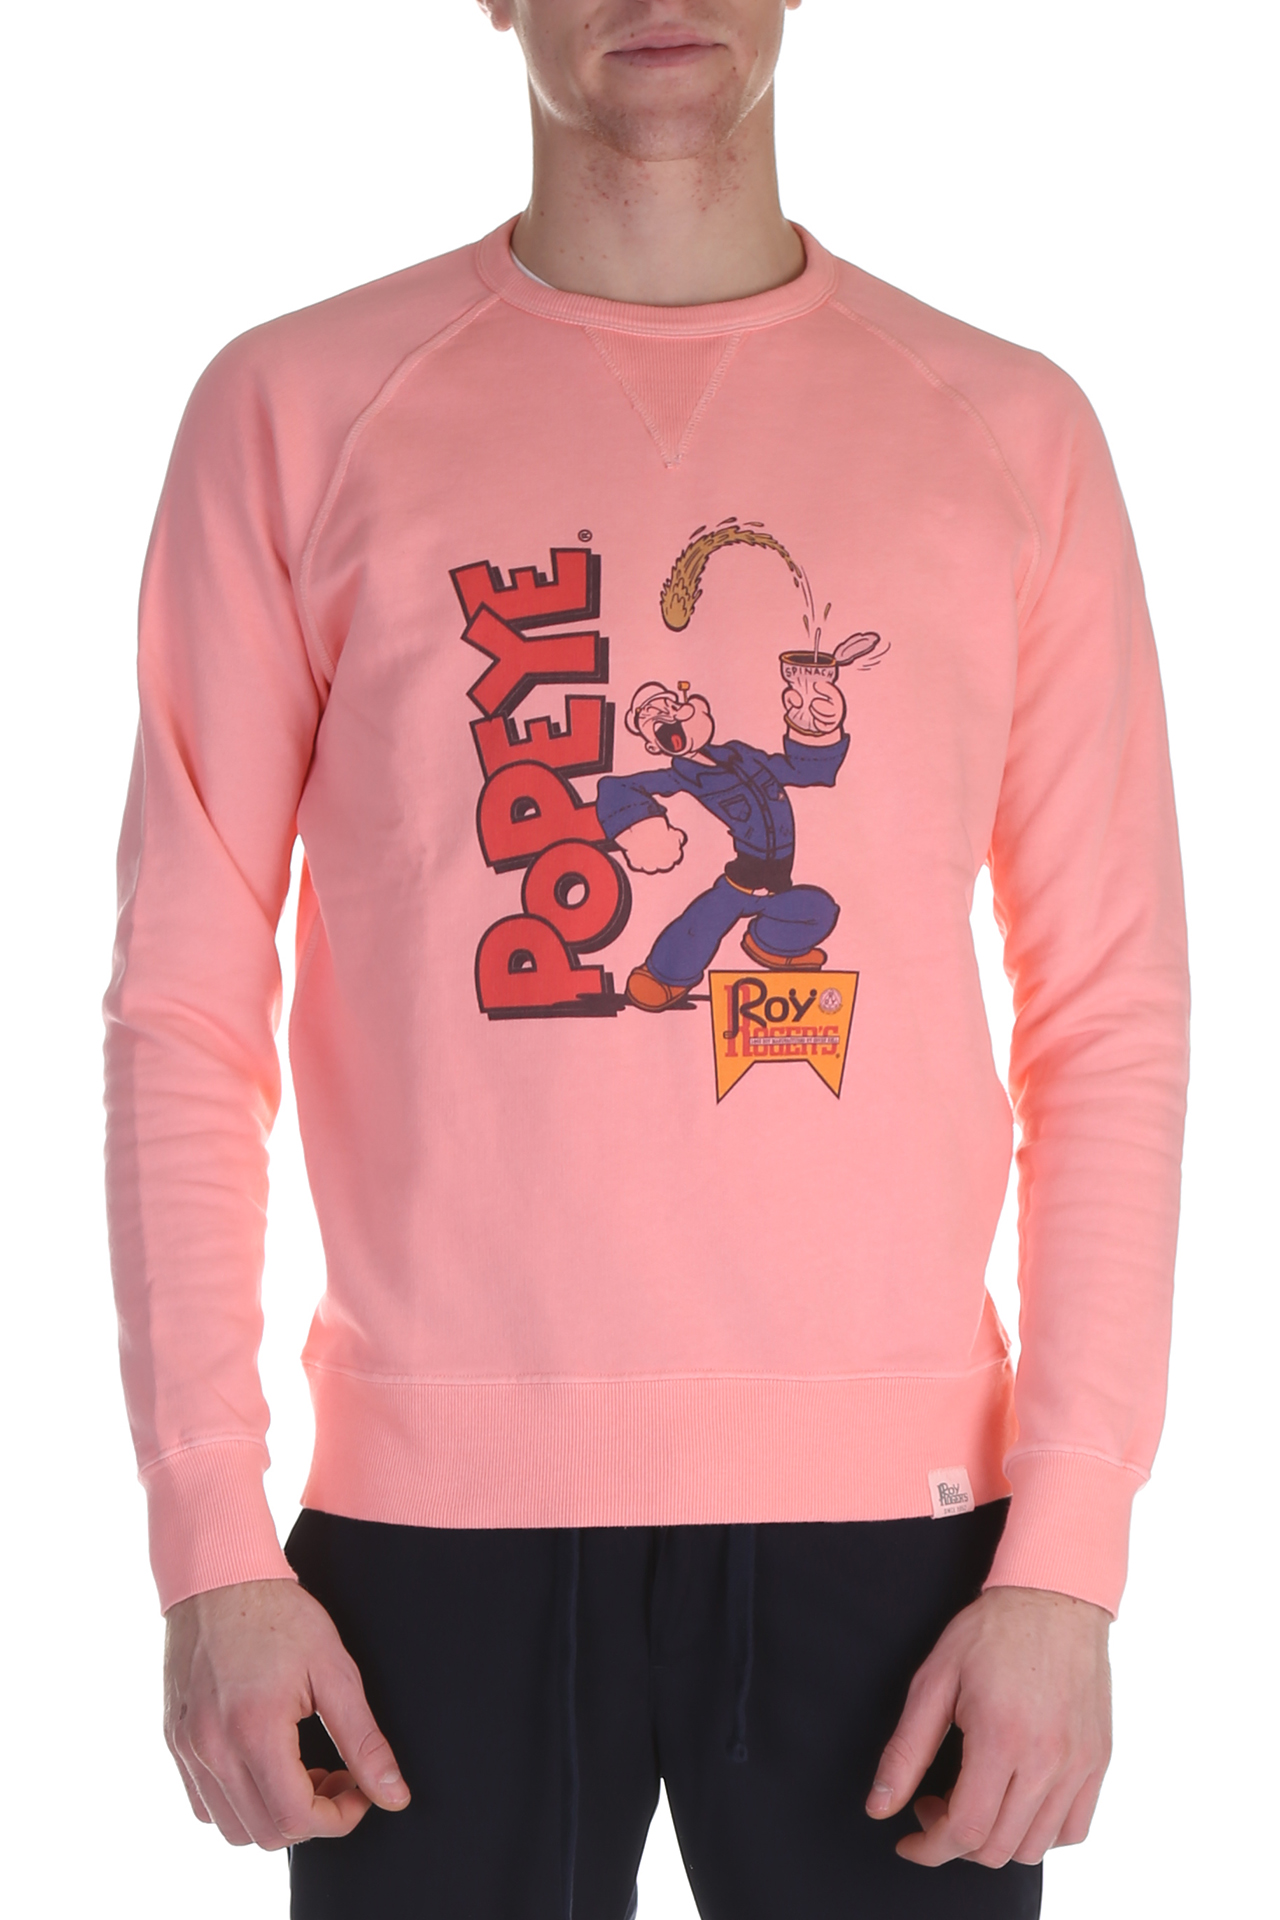 Roy Roger's, sweatshirt